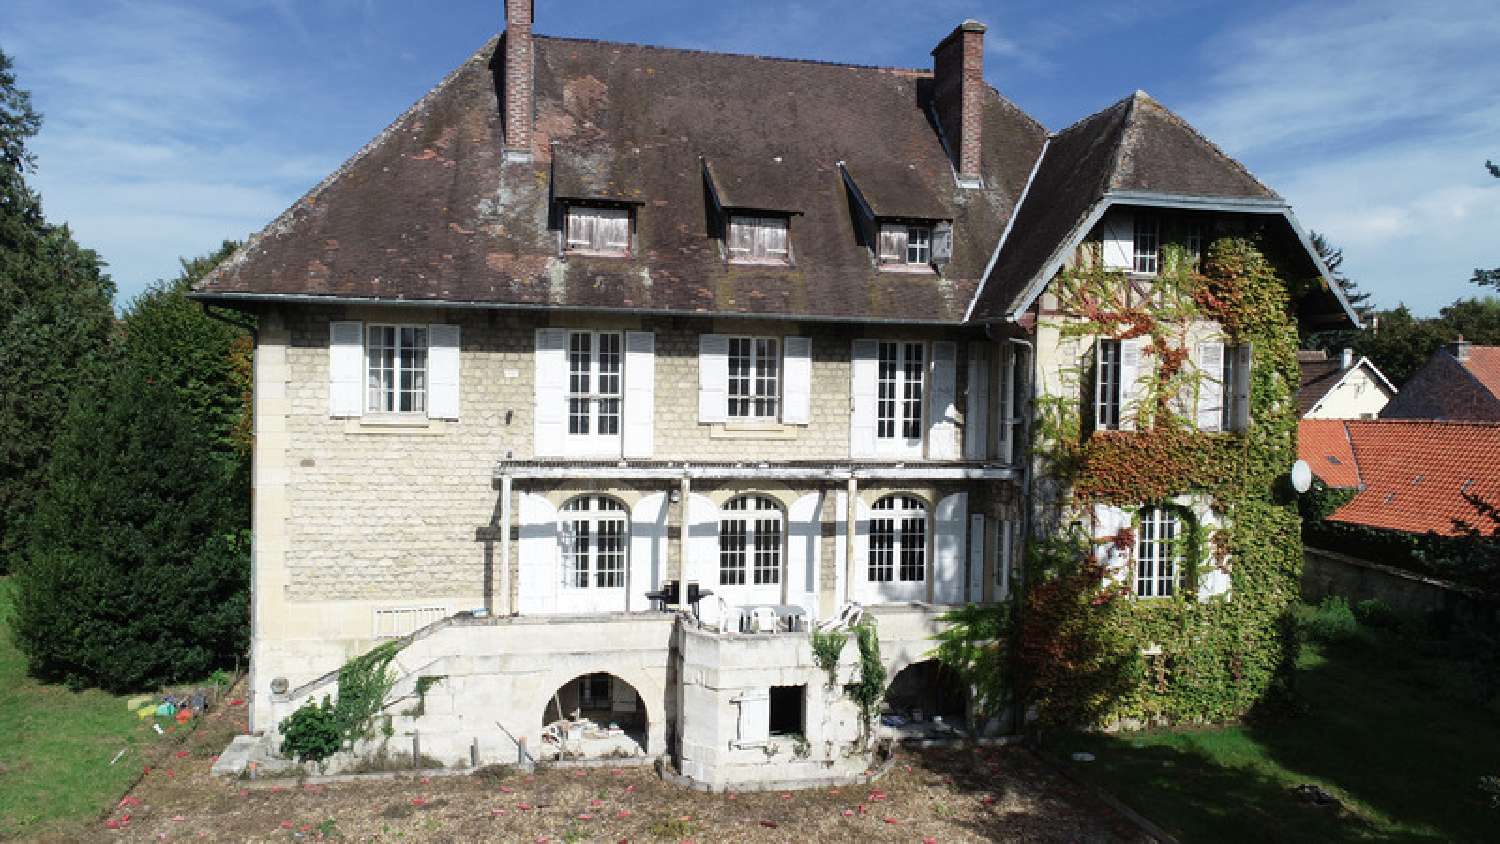  à vendre maison bourgeoise Missy-sur-Aisne Aisne 7